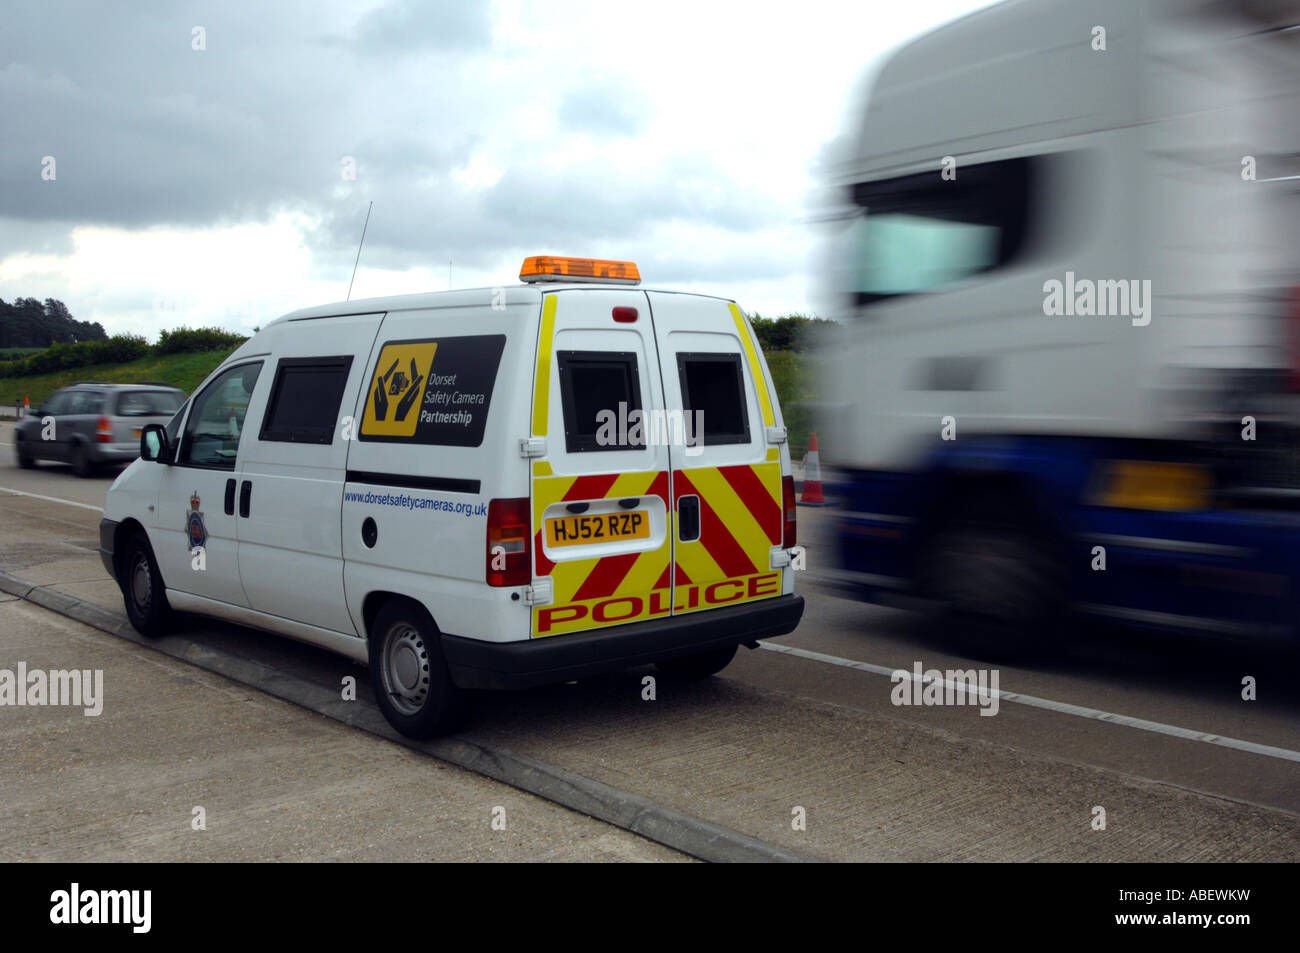 Mobilen Geschwindigkeit Kamera van, England, UK Stockfoto